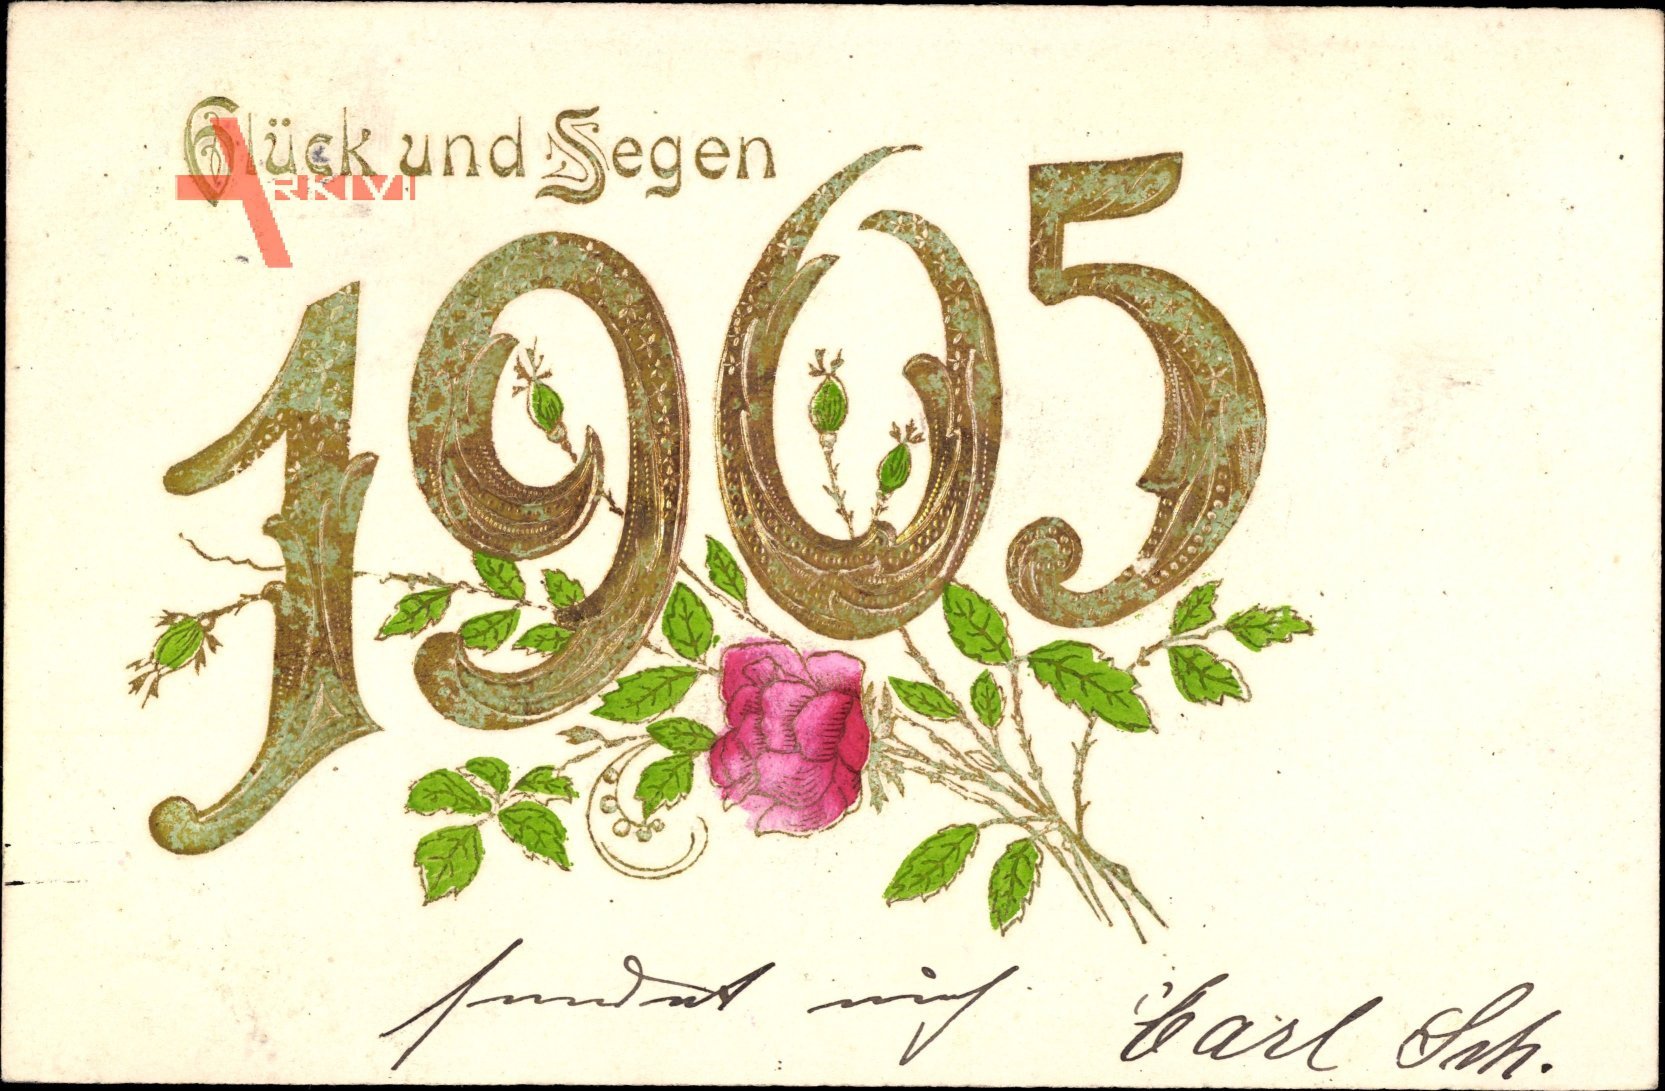 Glückwunsch Neujahr, Jahreszahl 1905, Rosenblüte, Glück und Segen